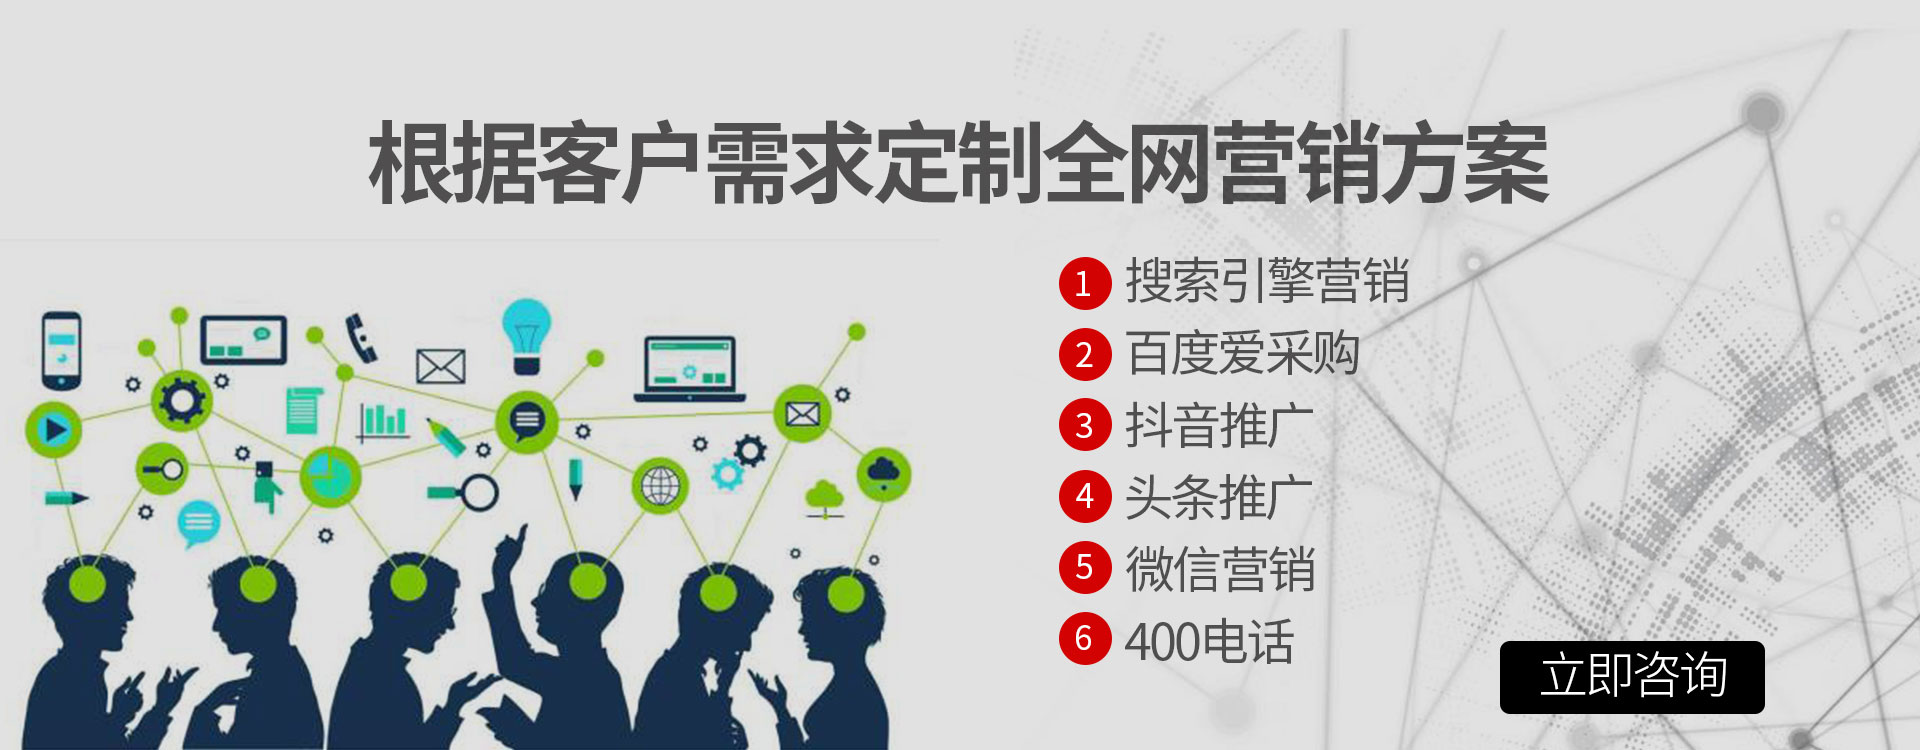  Xinjiang website construction, Xinjiang network company, Xinjiang optimization company, please choose Xinjiang Aixiangyou Internet Information Service Co., Ltd